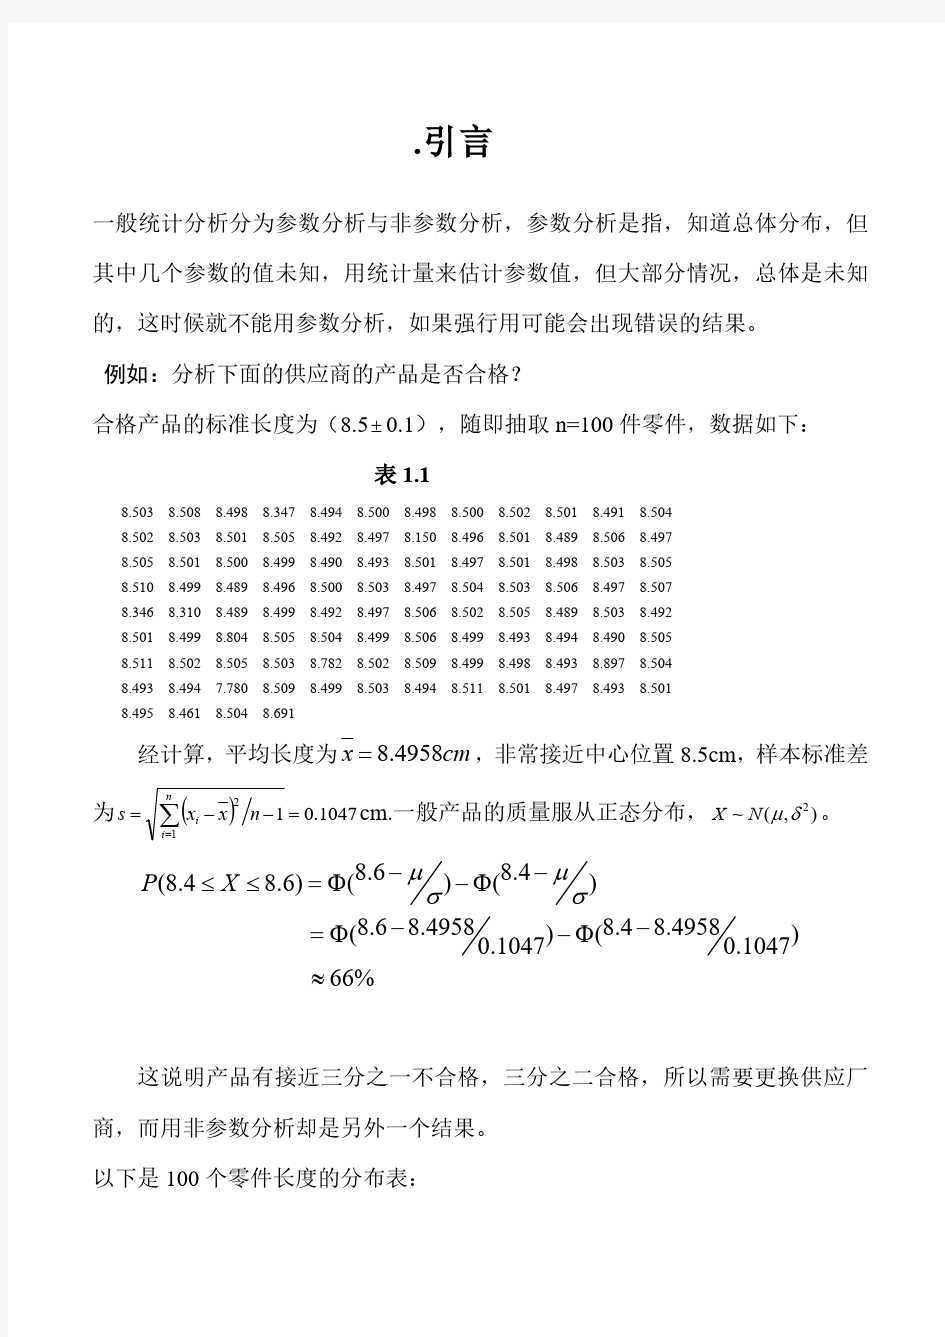 王静龙《非参数统计分析》(1-8章)教案